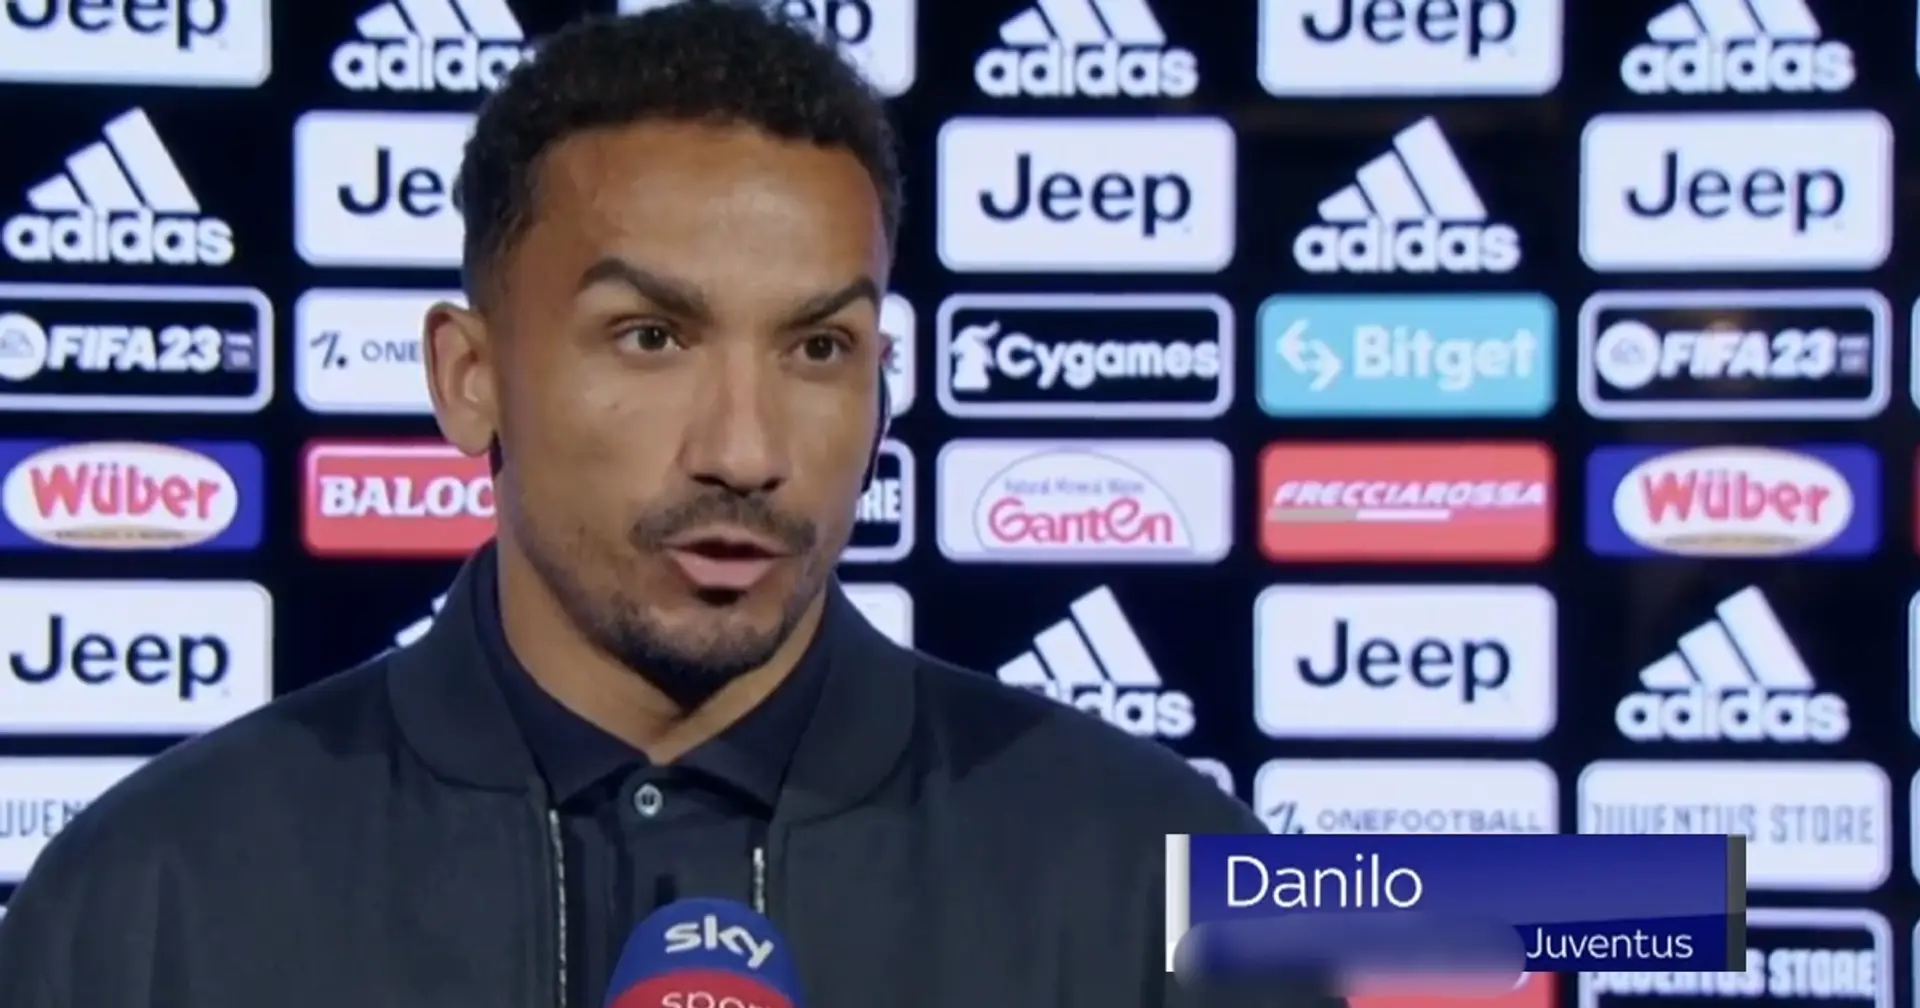 "Qualcuno ha commesso errori": Danilo spiega il suo ruolo da 'leader' al Capitano Alex Del Piero dopo la vittoria sul Friburgo